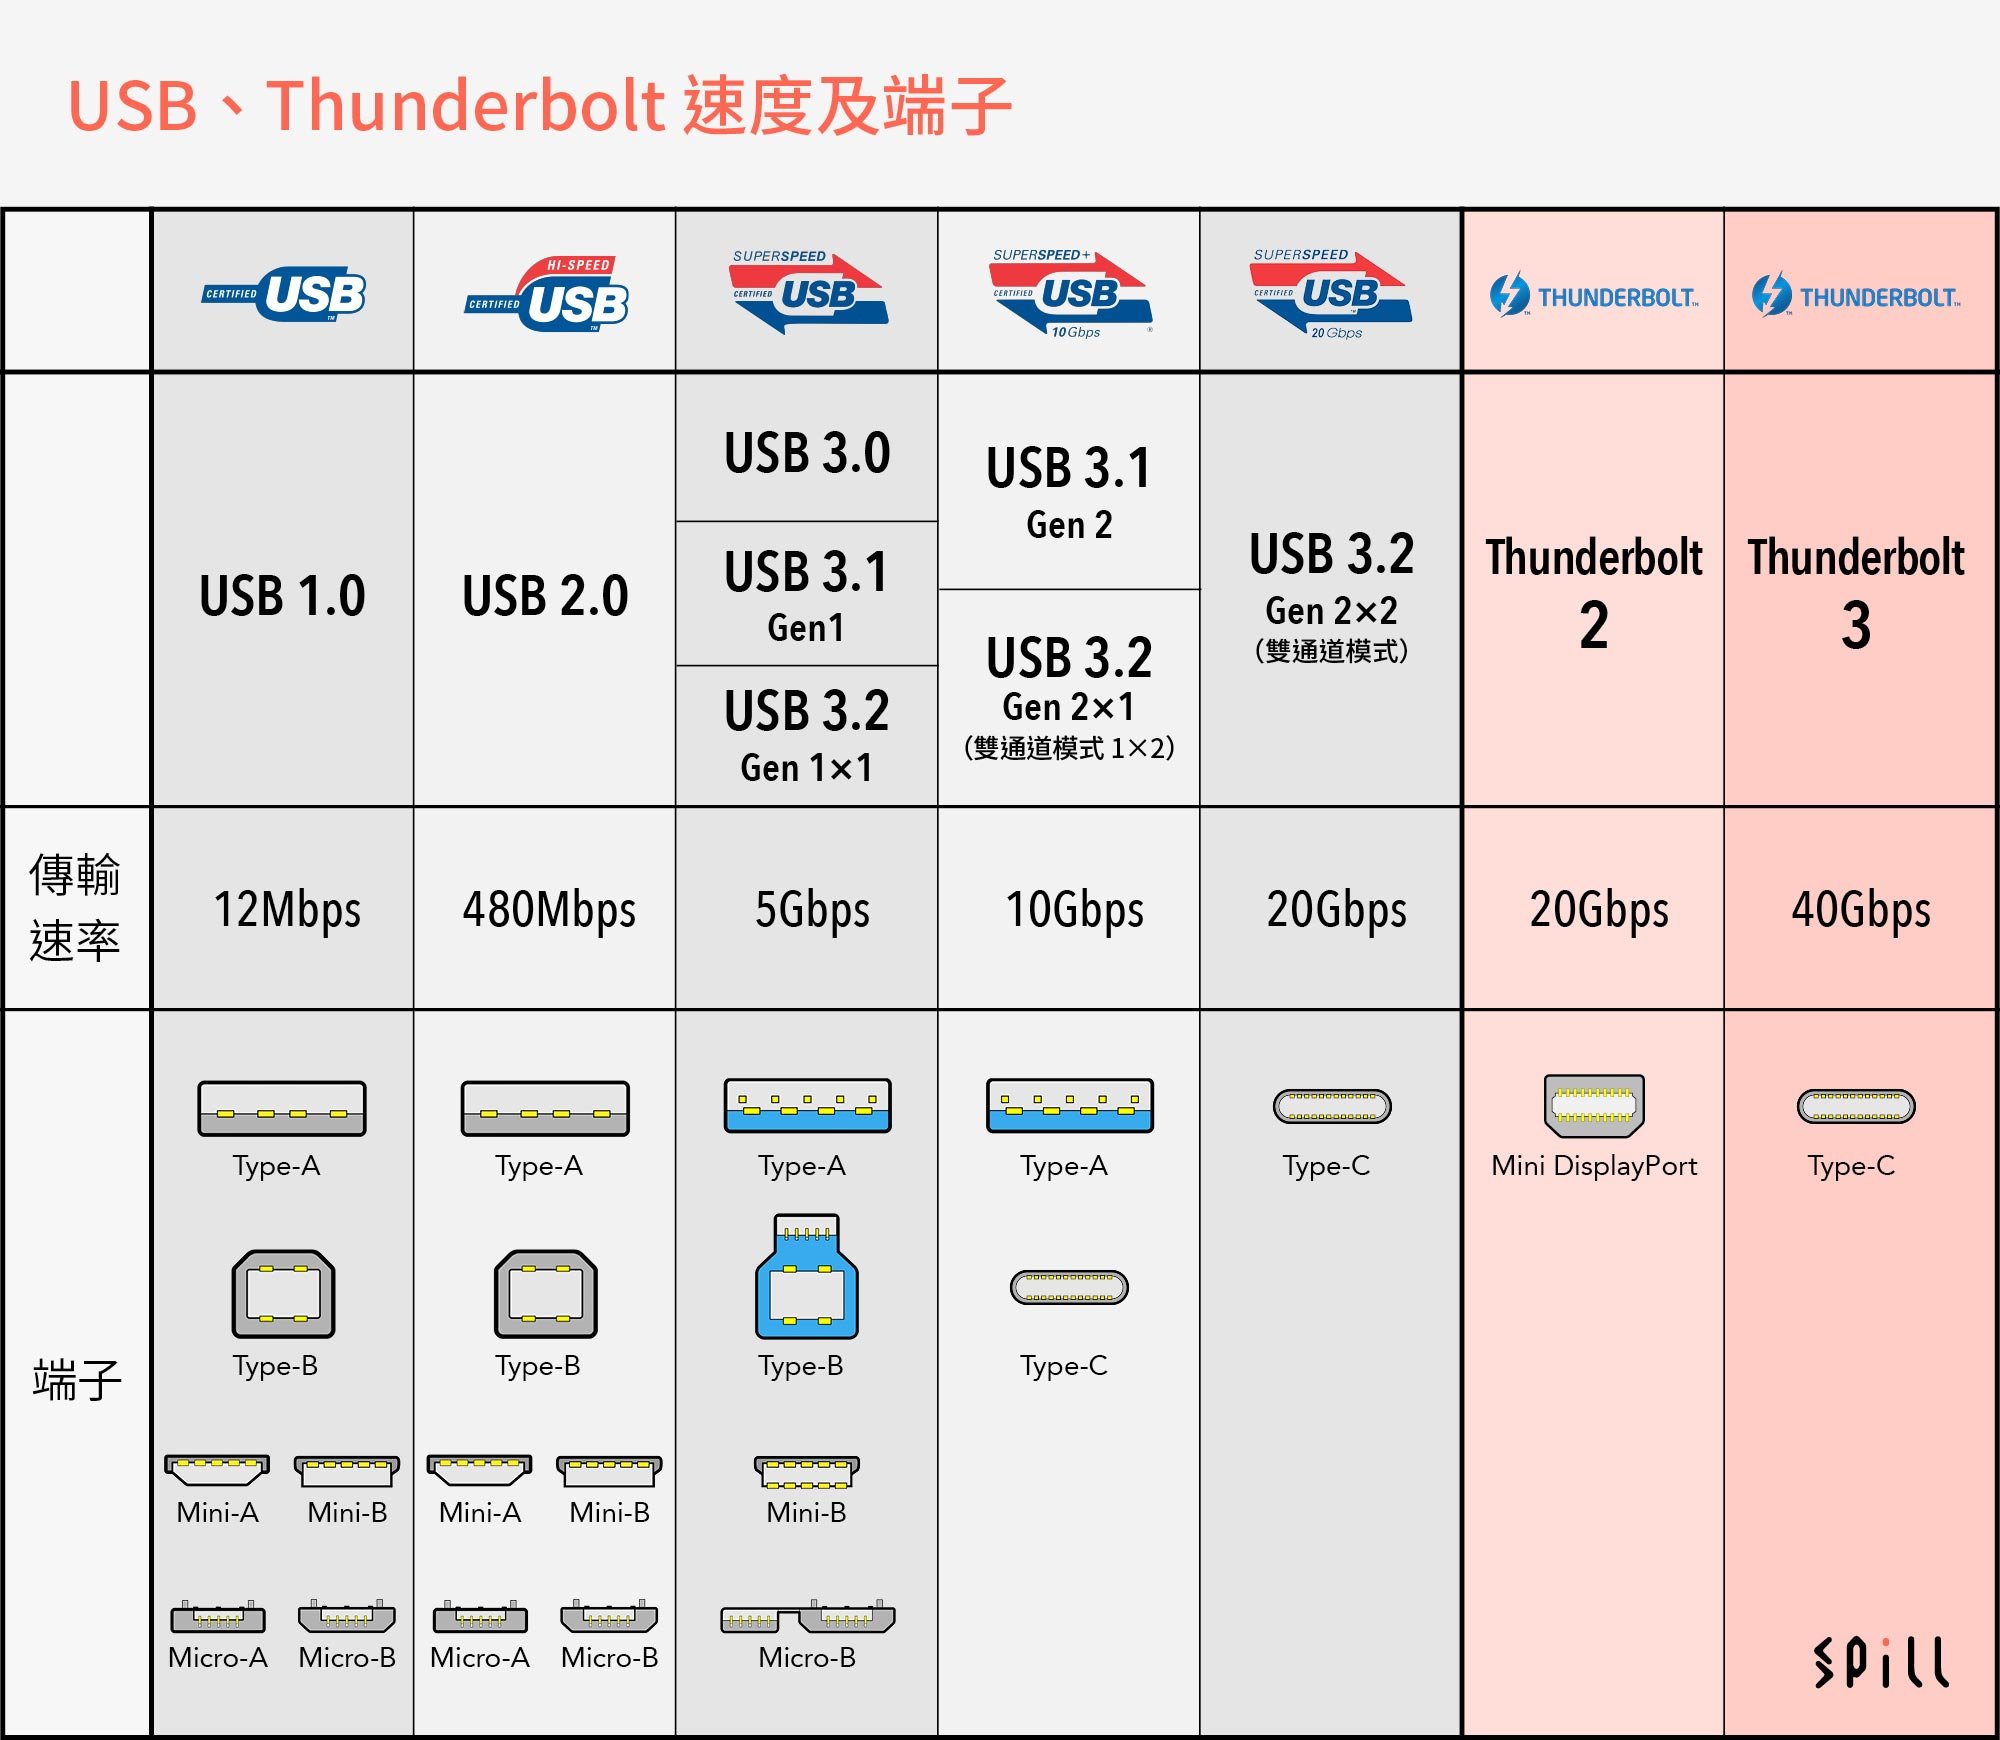 USB-IF 協會在 2019 年 3 月宣佈推出 USB 4.0 規格，當時預告將會整合 Thunderbolt 3，讓傳輸頻寬達到 40Gbps 的高速，比起現時最普及的 USB 3.0 的 5Gbps 提升 8 倍。也有新消息指 USB 4.0 會支援 DisplayPort 2.0、能夠輸出 8K/60P 甚至 16K 的超高解像度。而且全面轉用 USB-C 端子之下，讓接駁更方便，更重要是可以解決現時 USB 3.0、USB 3.1、USB 3.2 的混亂規格和命名。